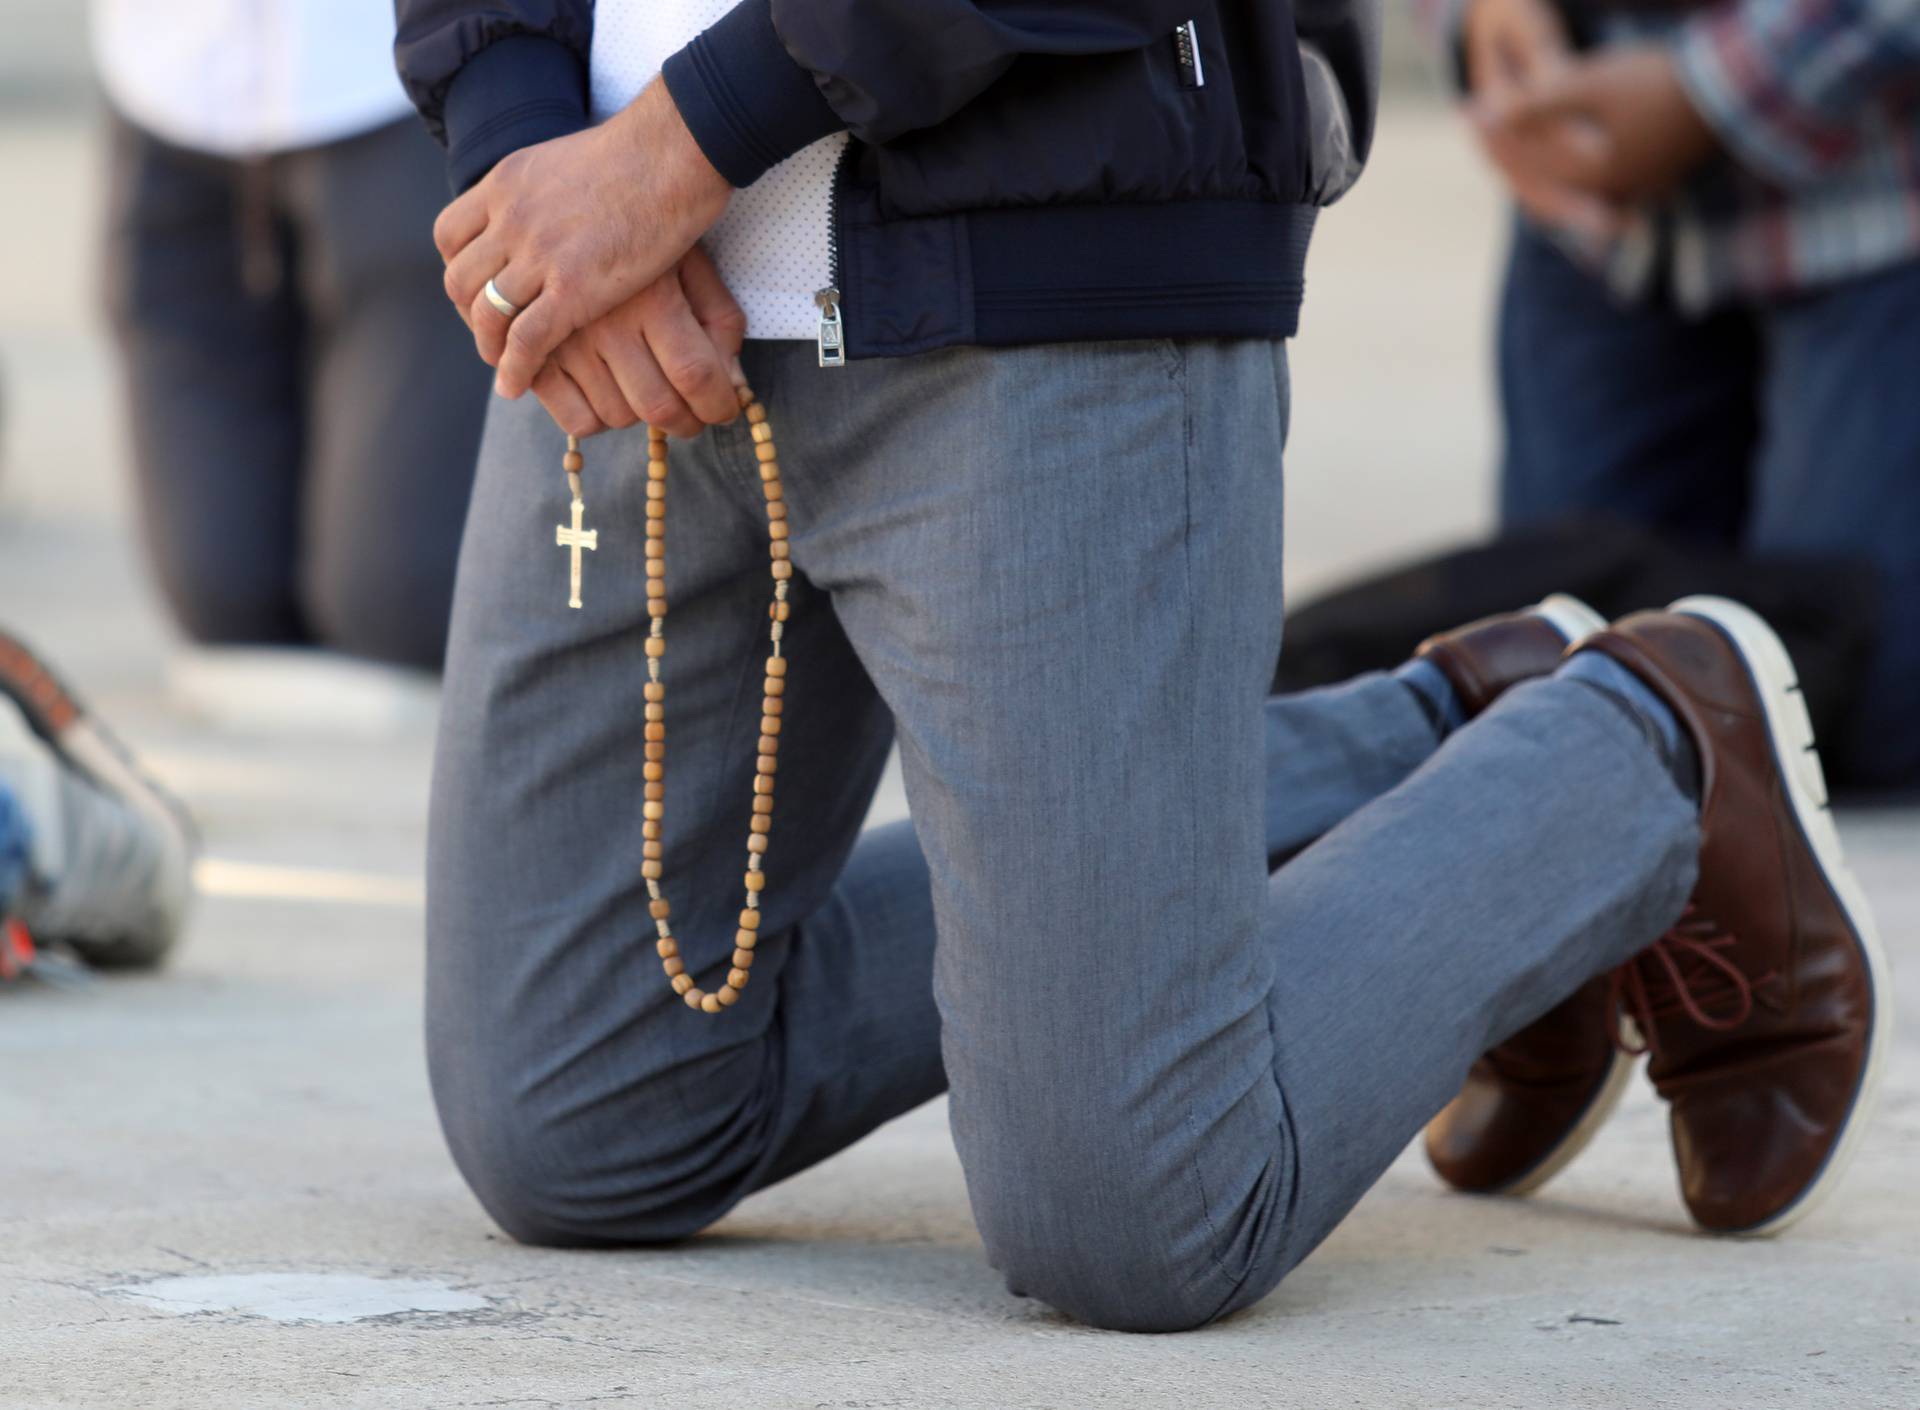 Muškarci molili krunicu ispred gradske uprave u Šibeniku